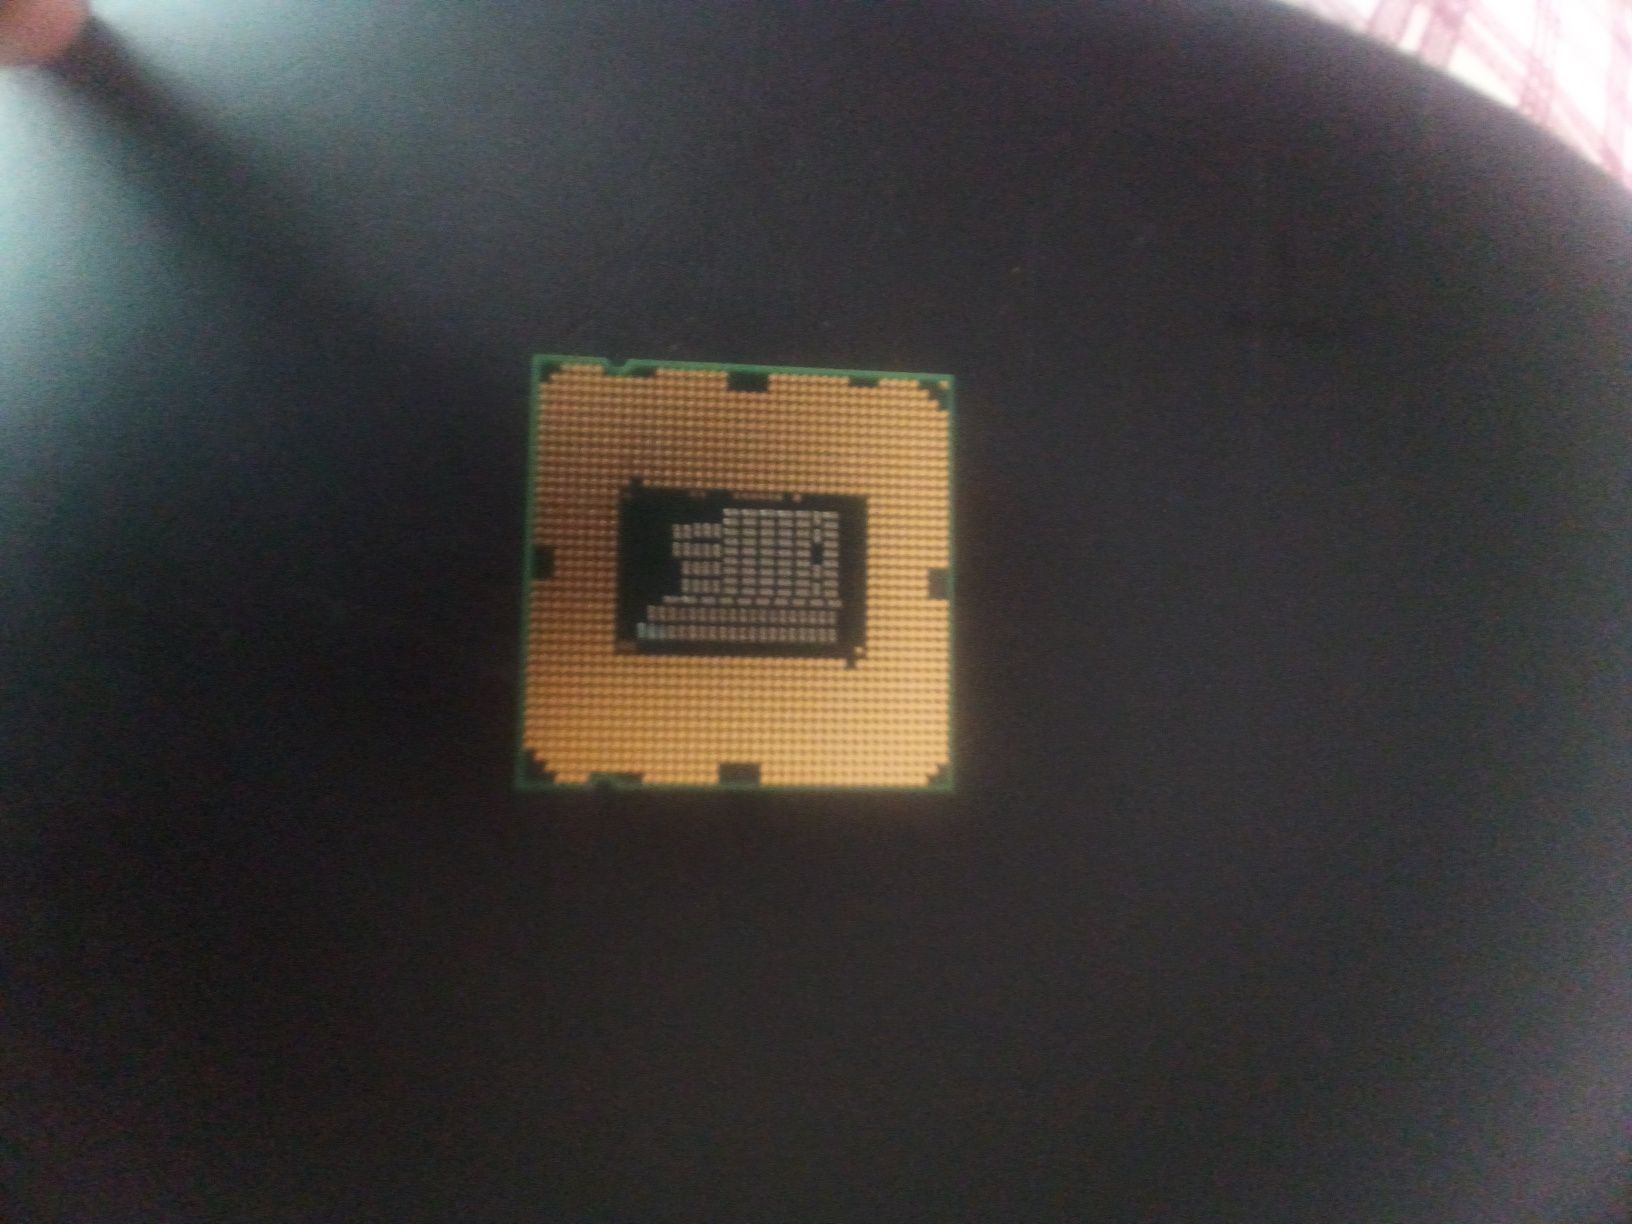 Processador I3 segunda geração